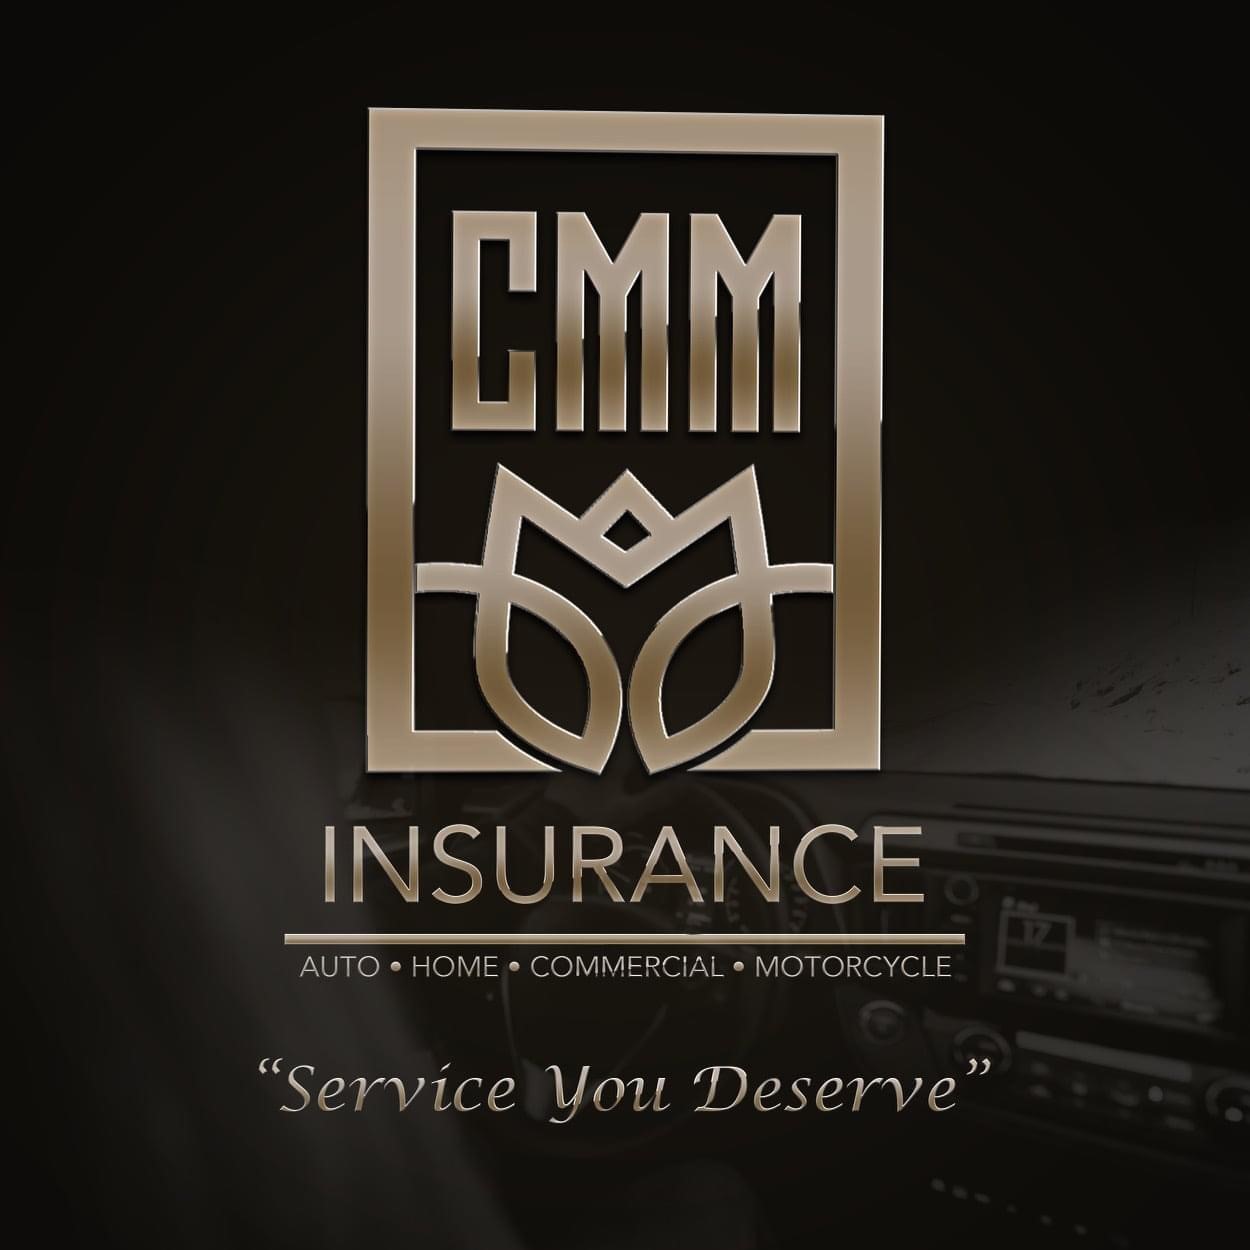 CMM Insurance Agency